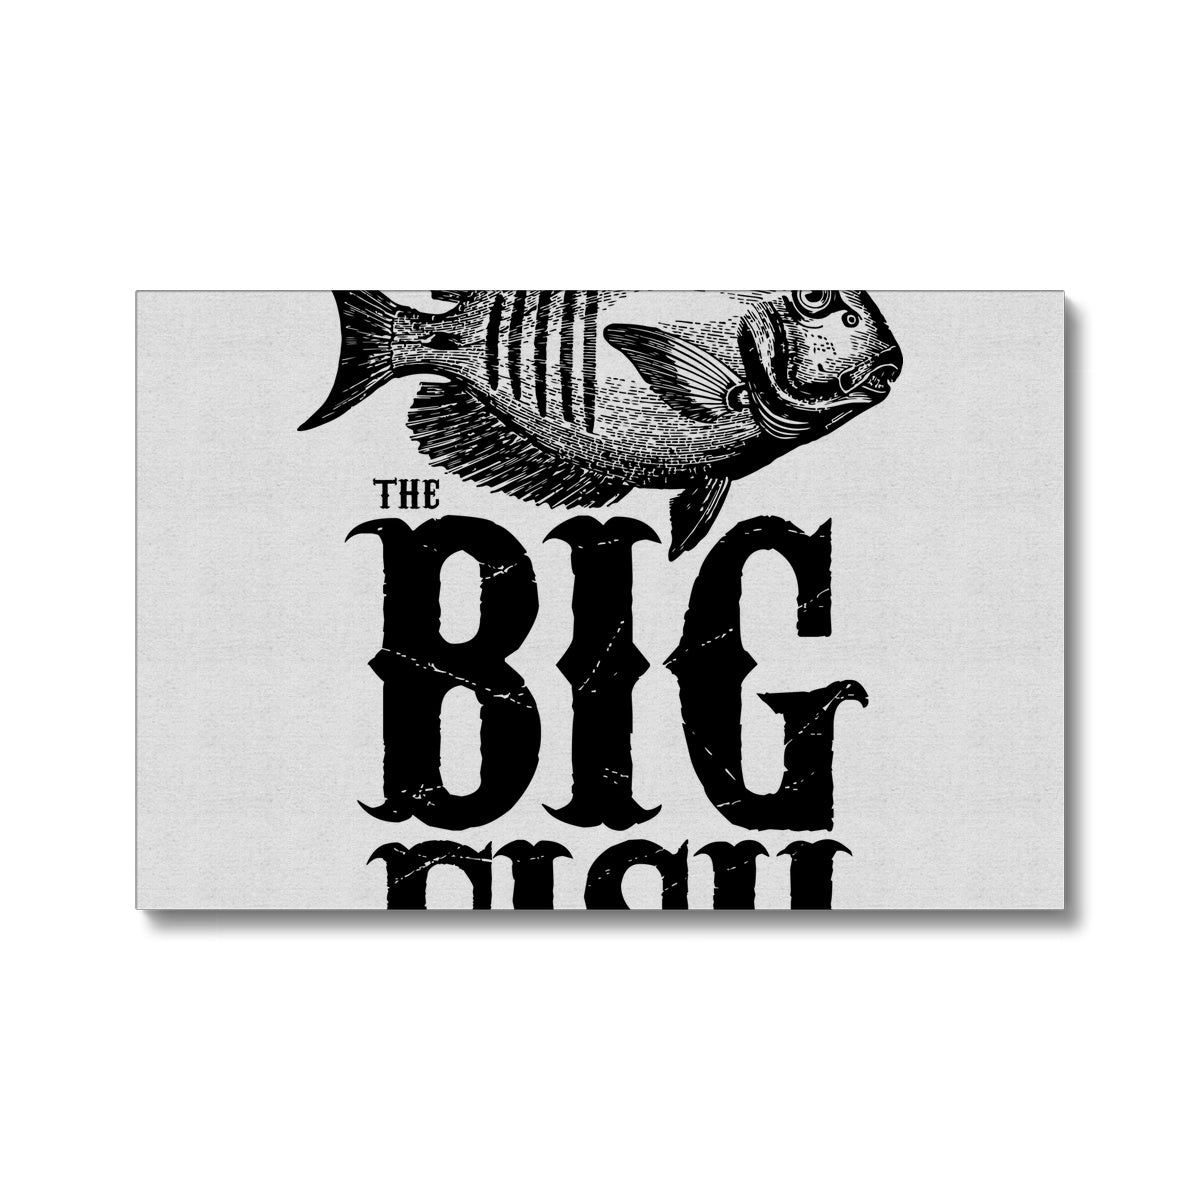 AQUA B&W - 01 -Big Fish - Eco Canvas